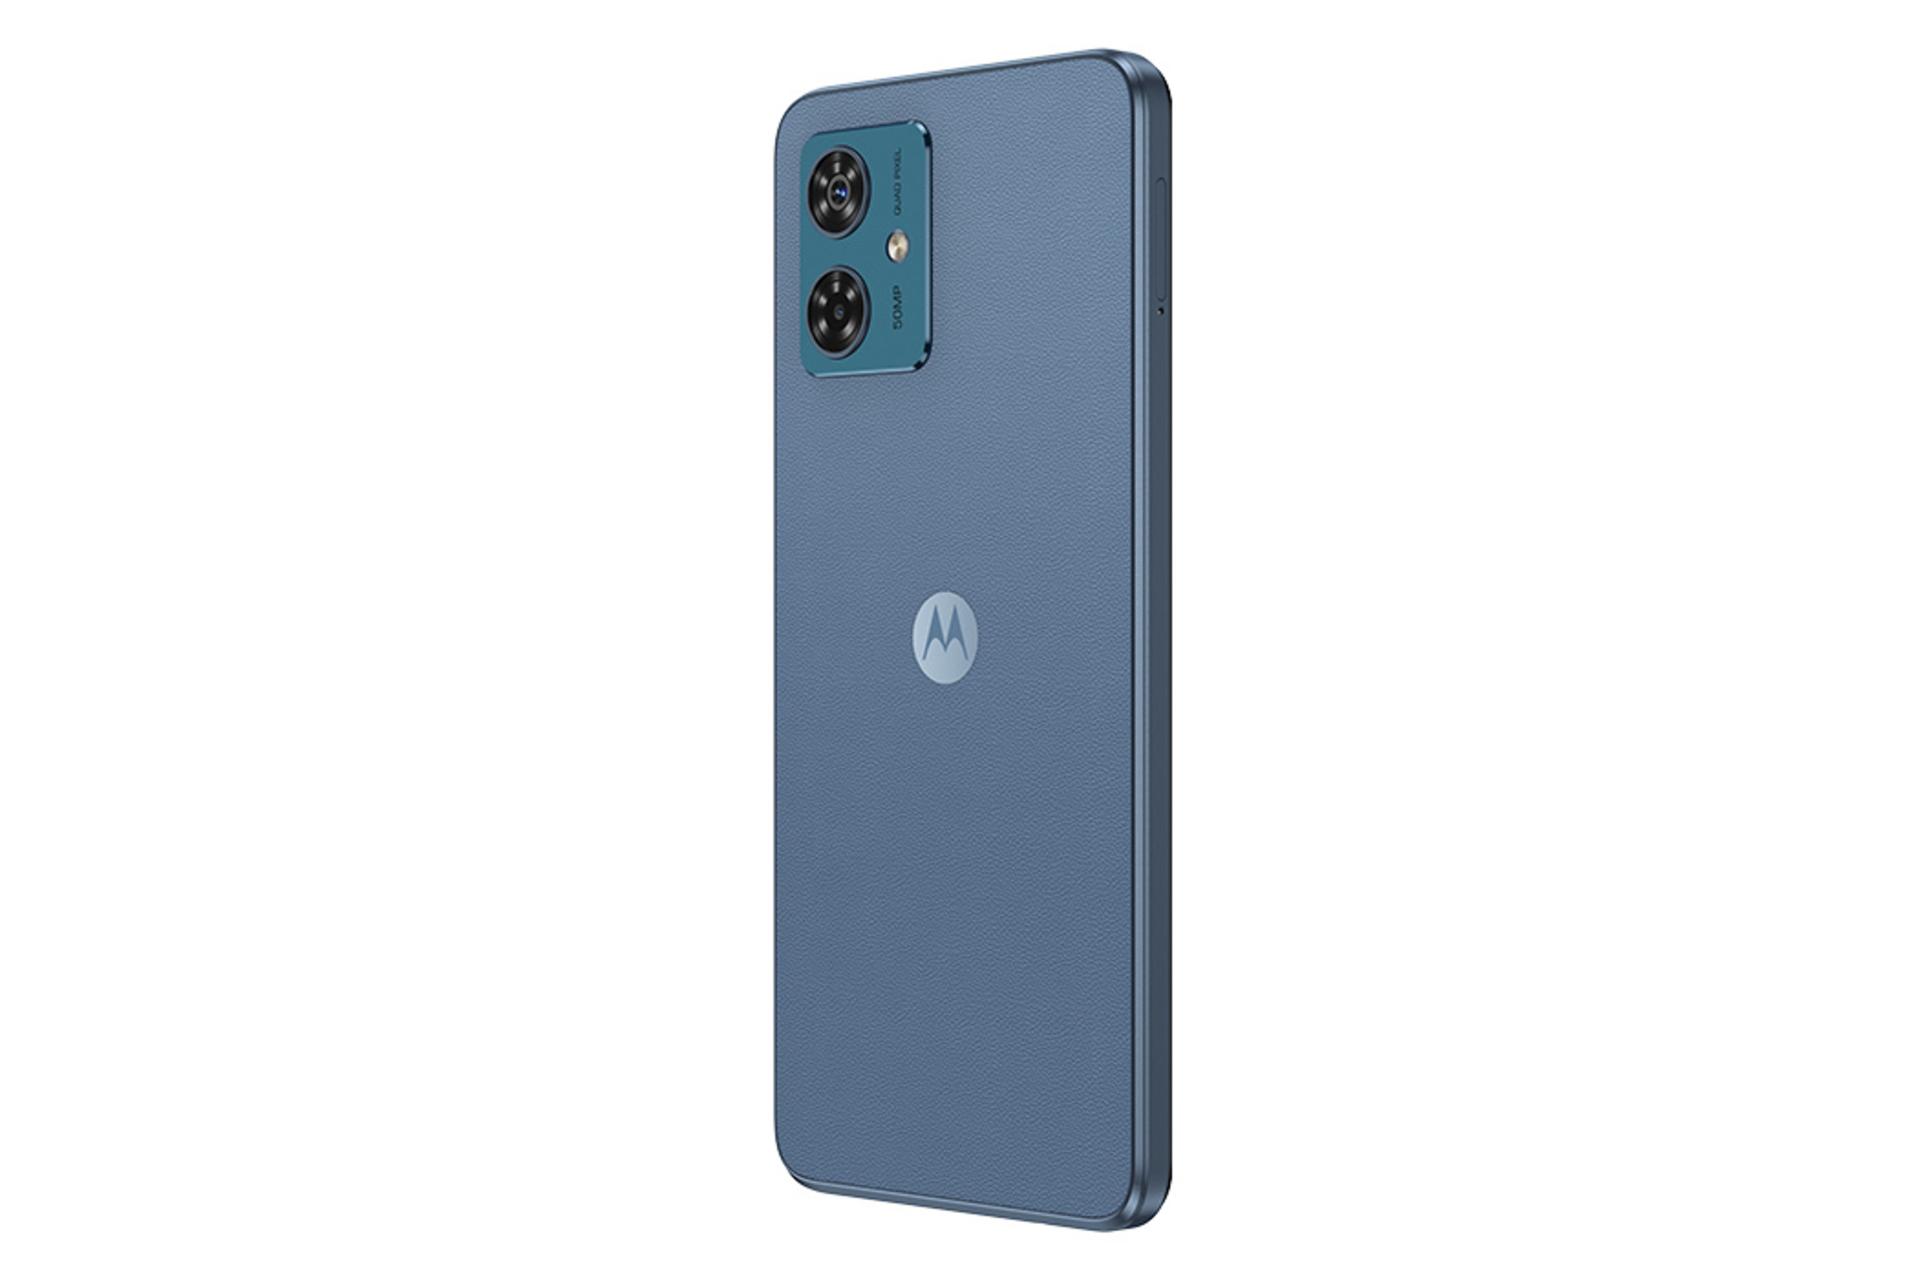 پنل پشت گوشی موبایل موتو G54 موتورولا نسخه چین / Motorola Moto G54 China آبی